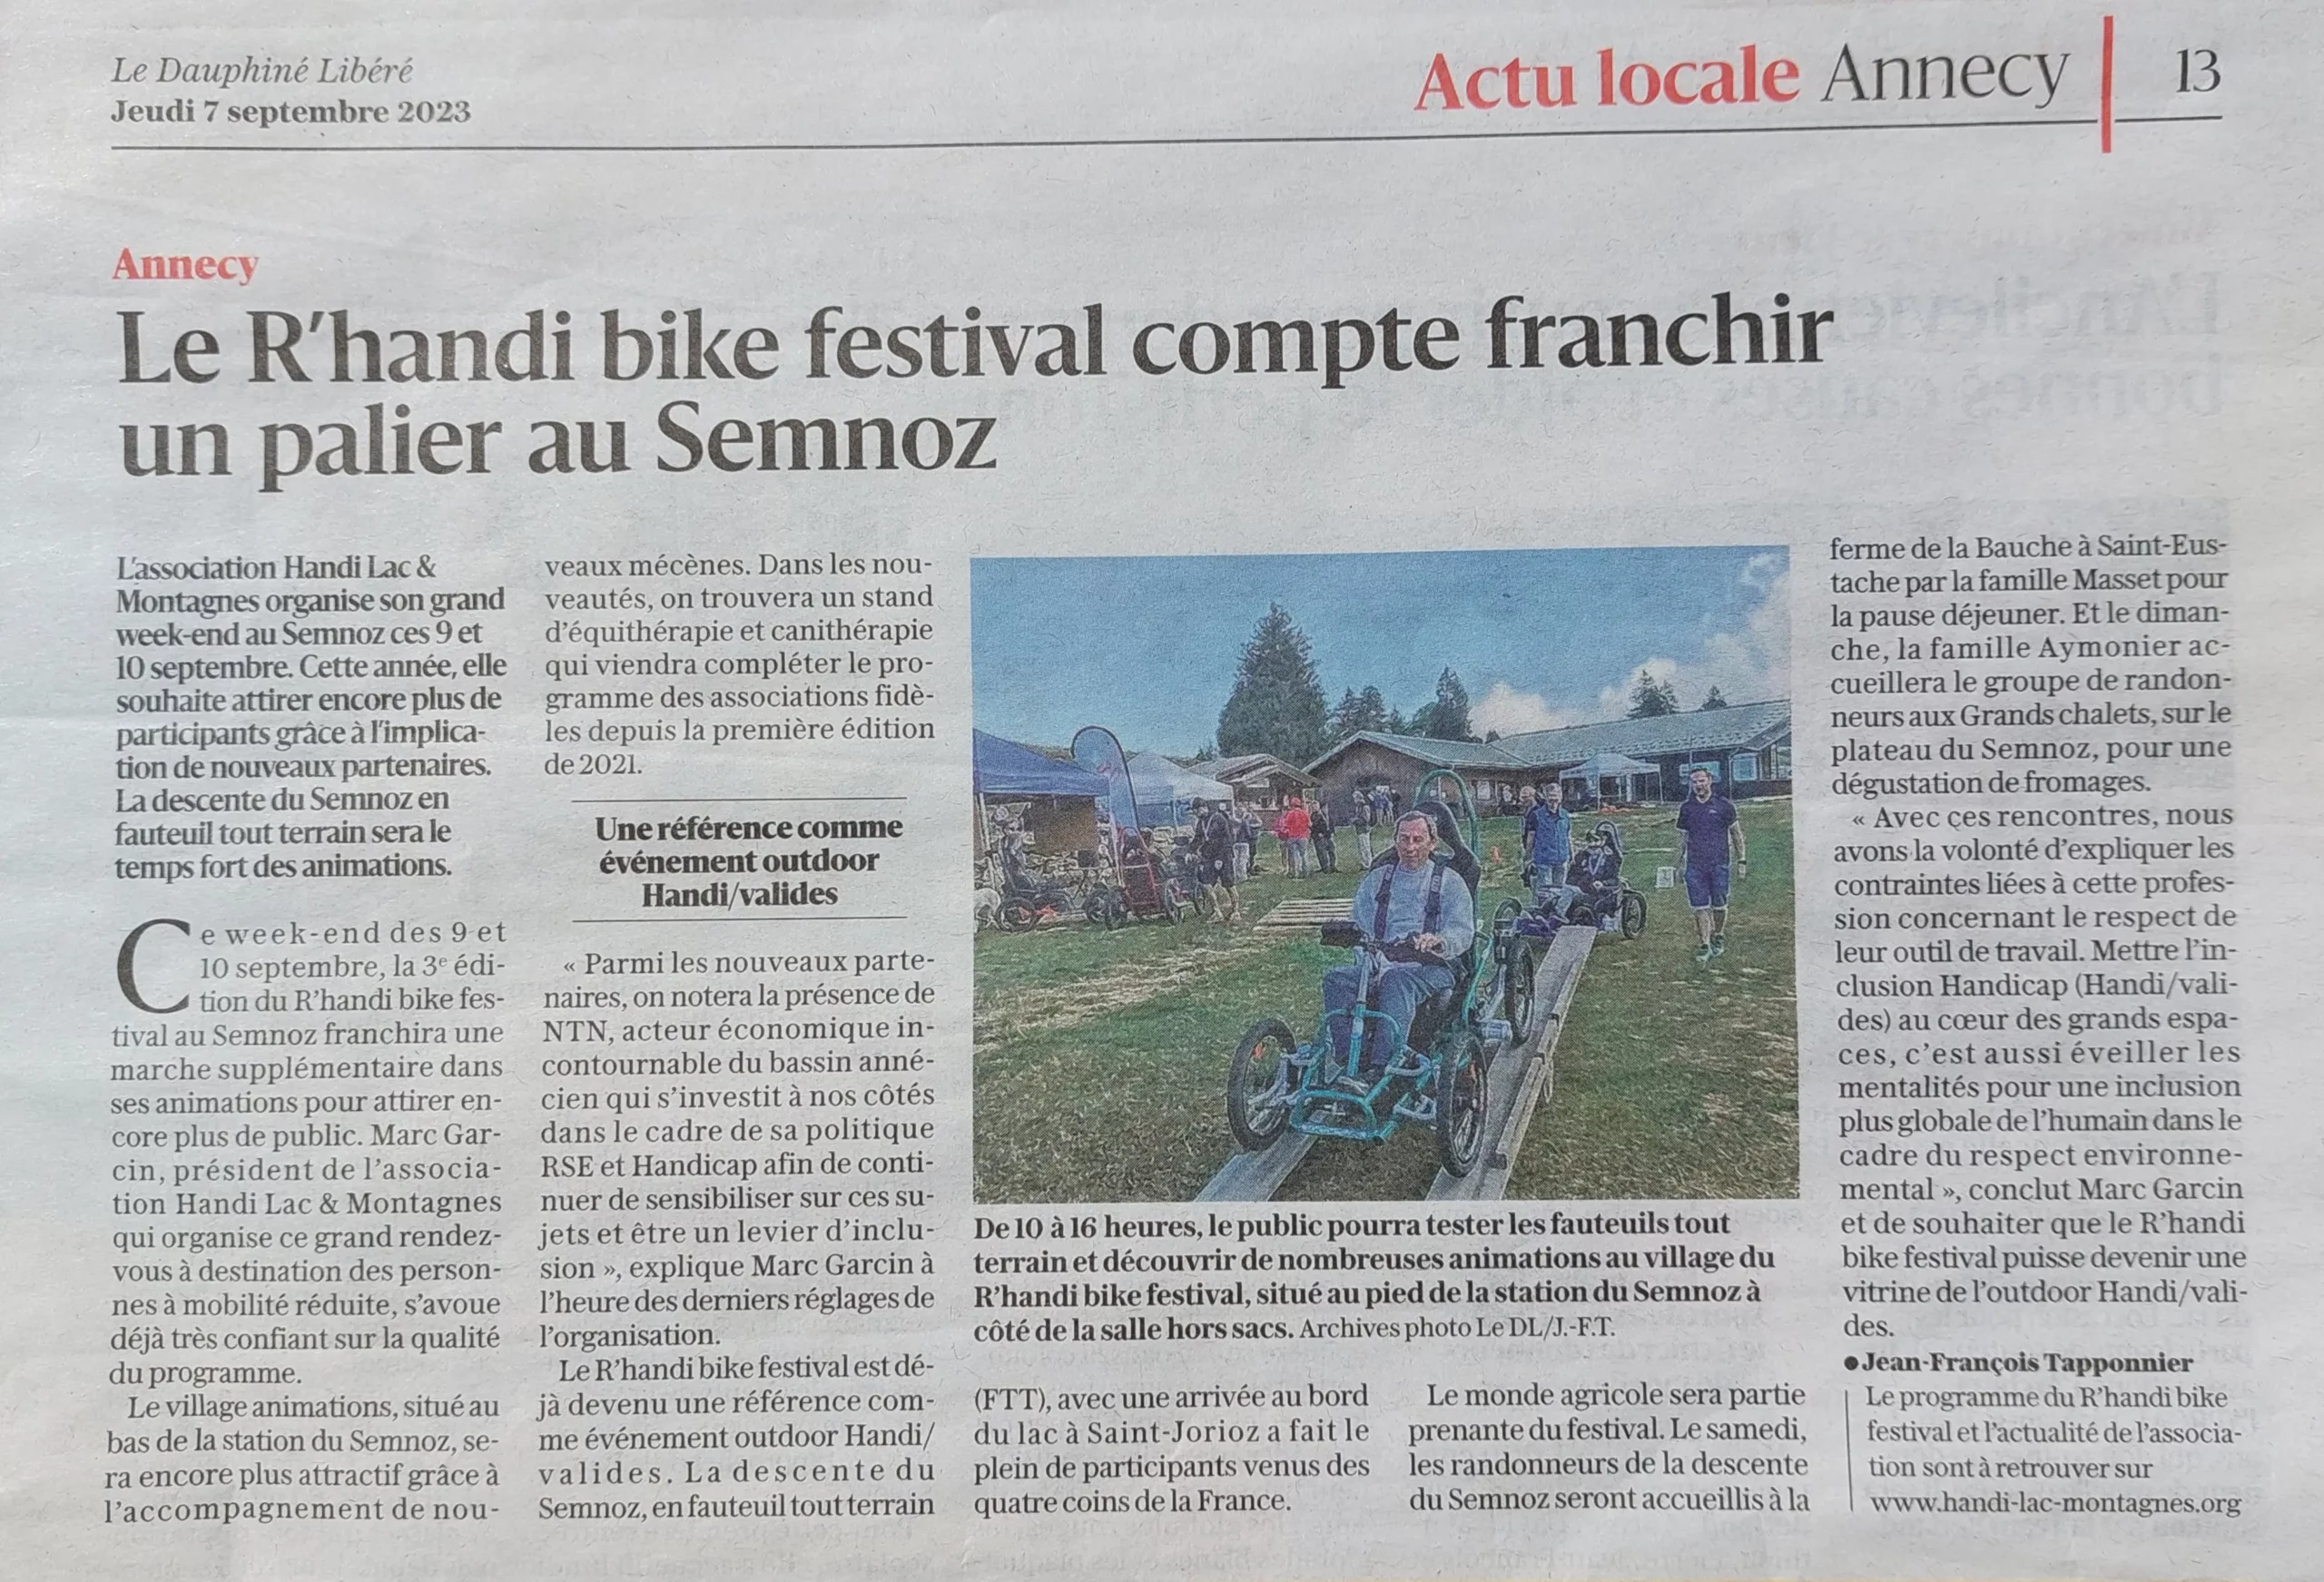 Article du Dauphiné Libéré paru le 07 septembre 2023 avec pour titre "Le R'handi bike festival compte franchir un palier au Semnoz"